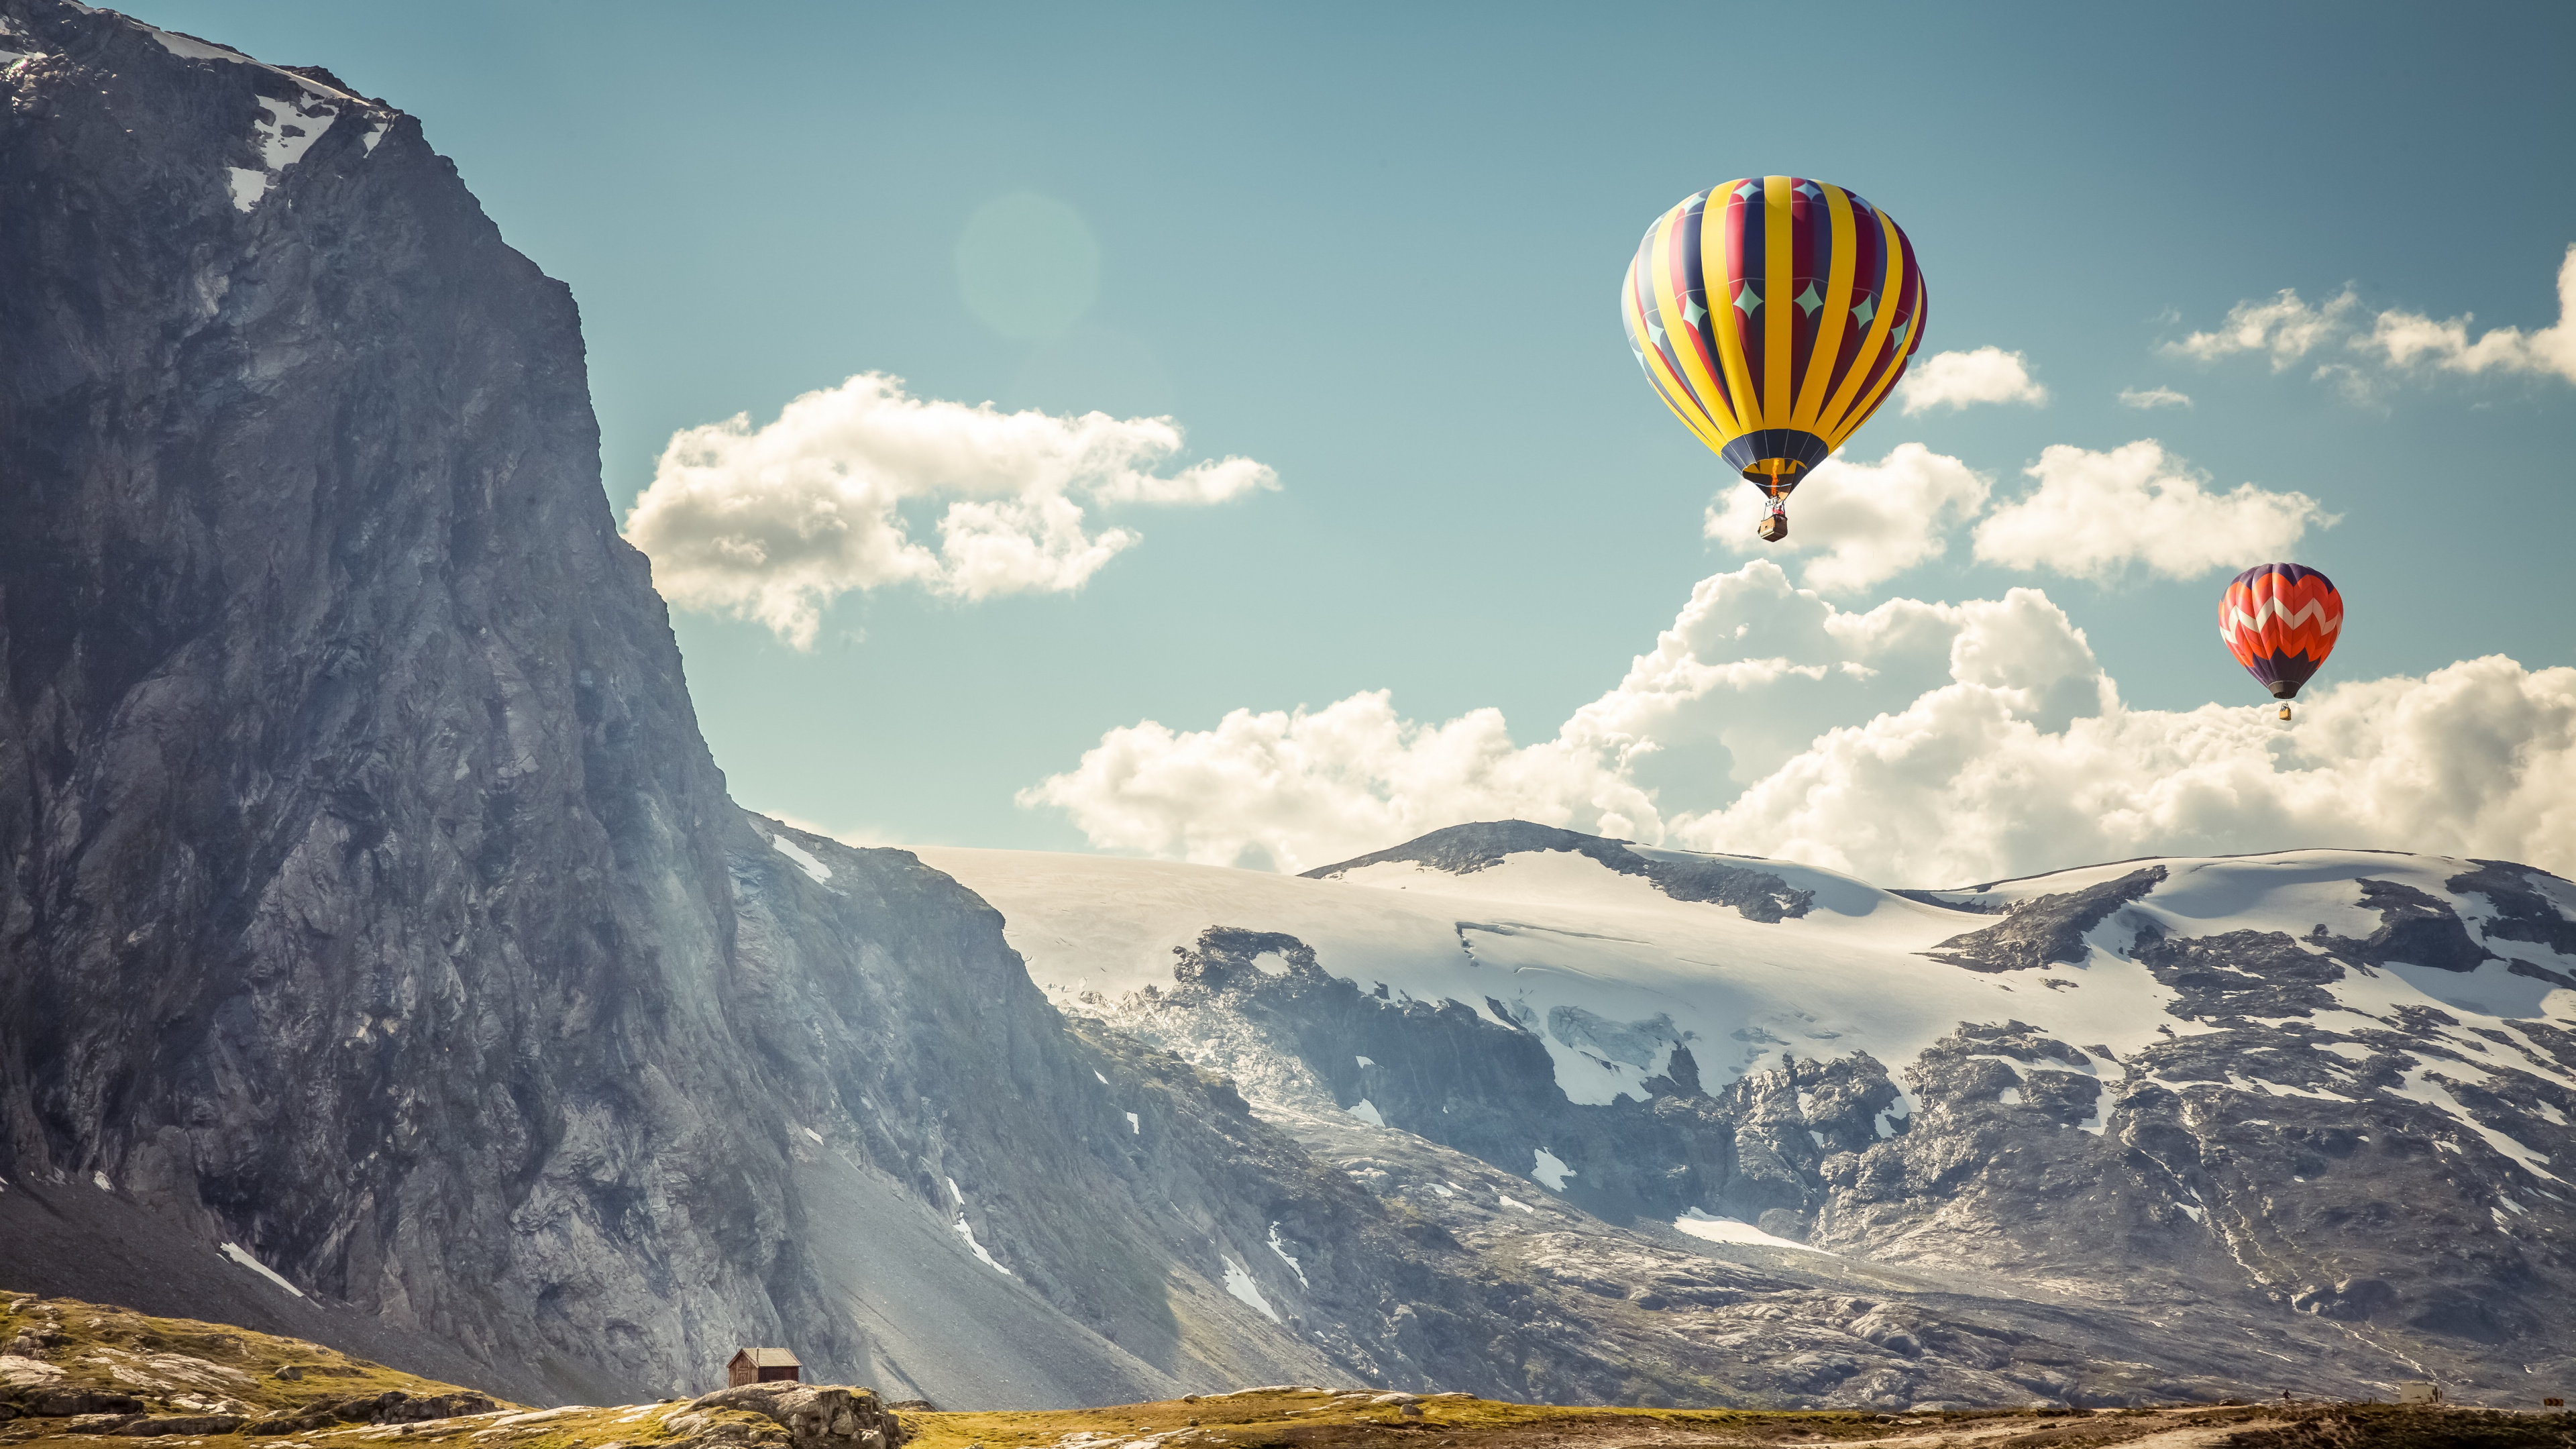 热气球, 山脉, 极限运动, 气囊, 旅游业 壁纸 3840x2160 允许